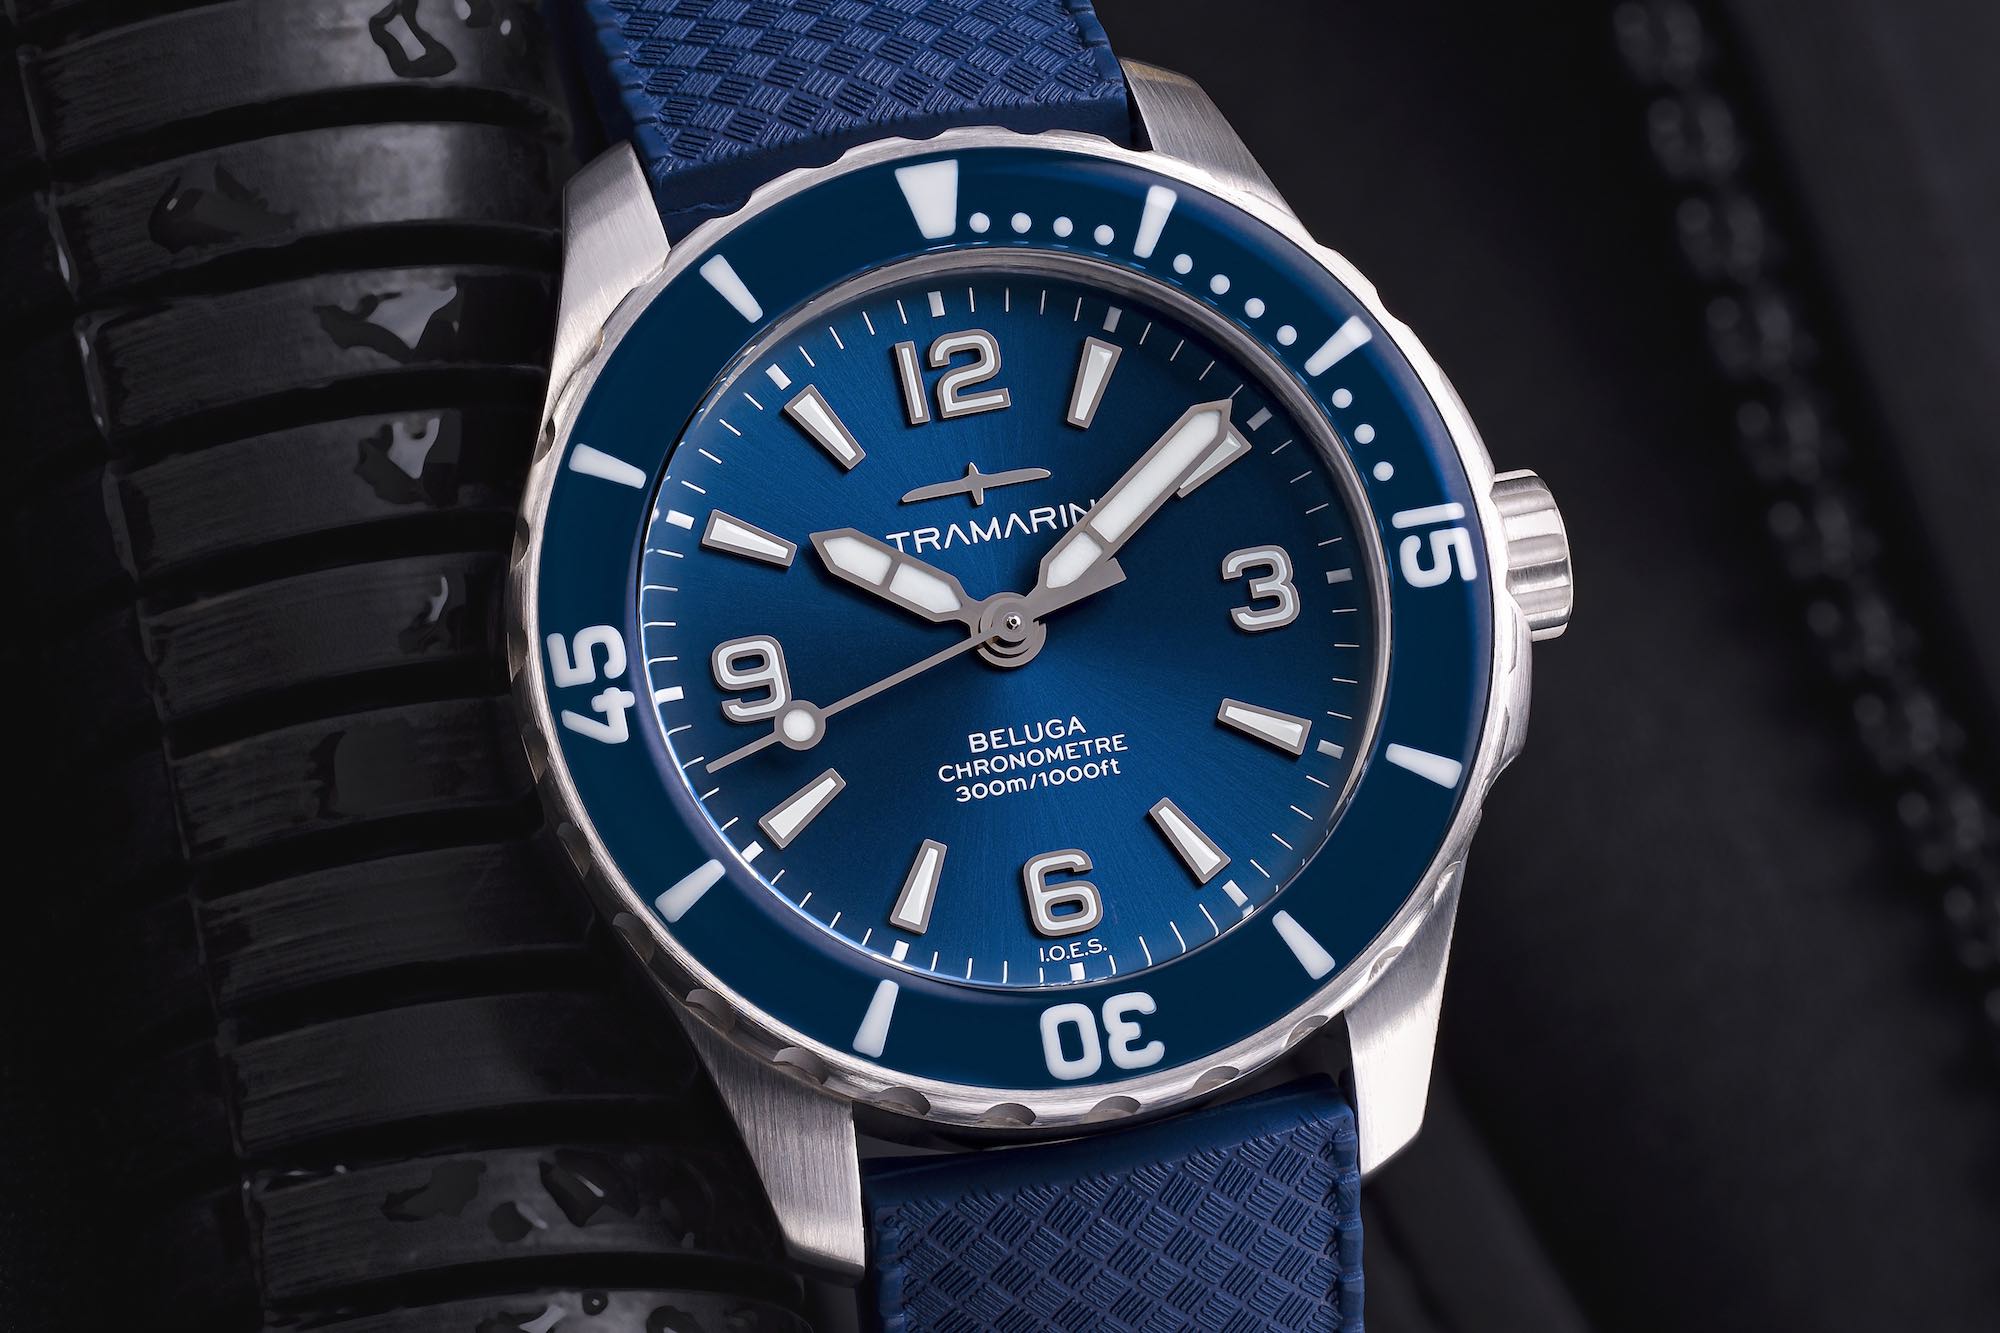 Ultramarine Beluga Dive watch - Kenissi Automatic COSC